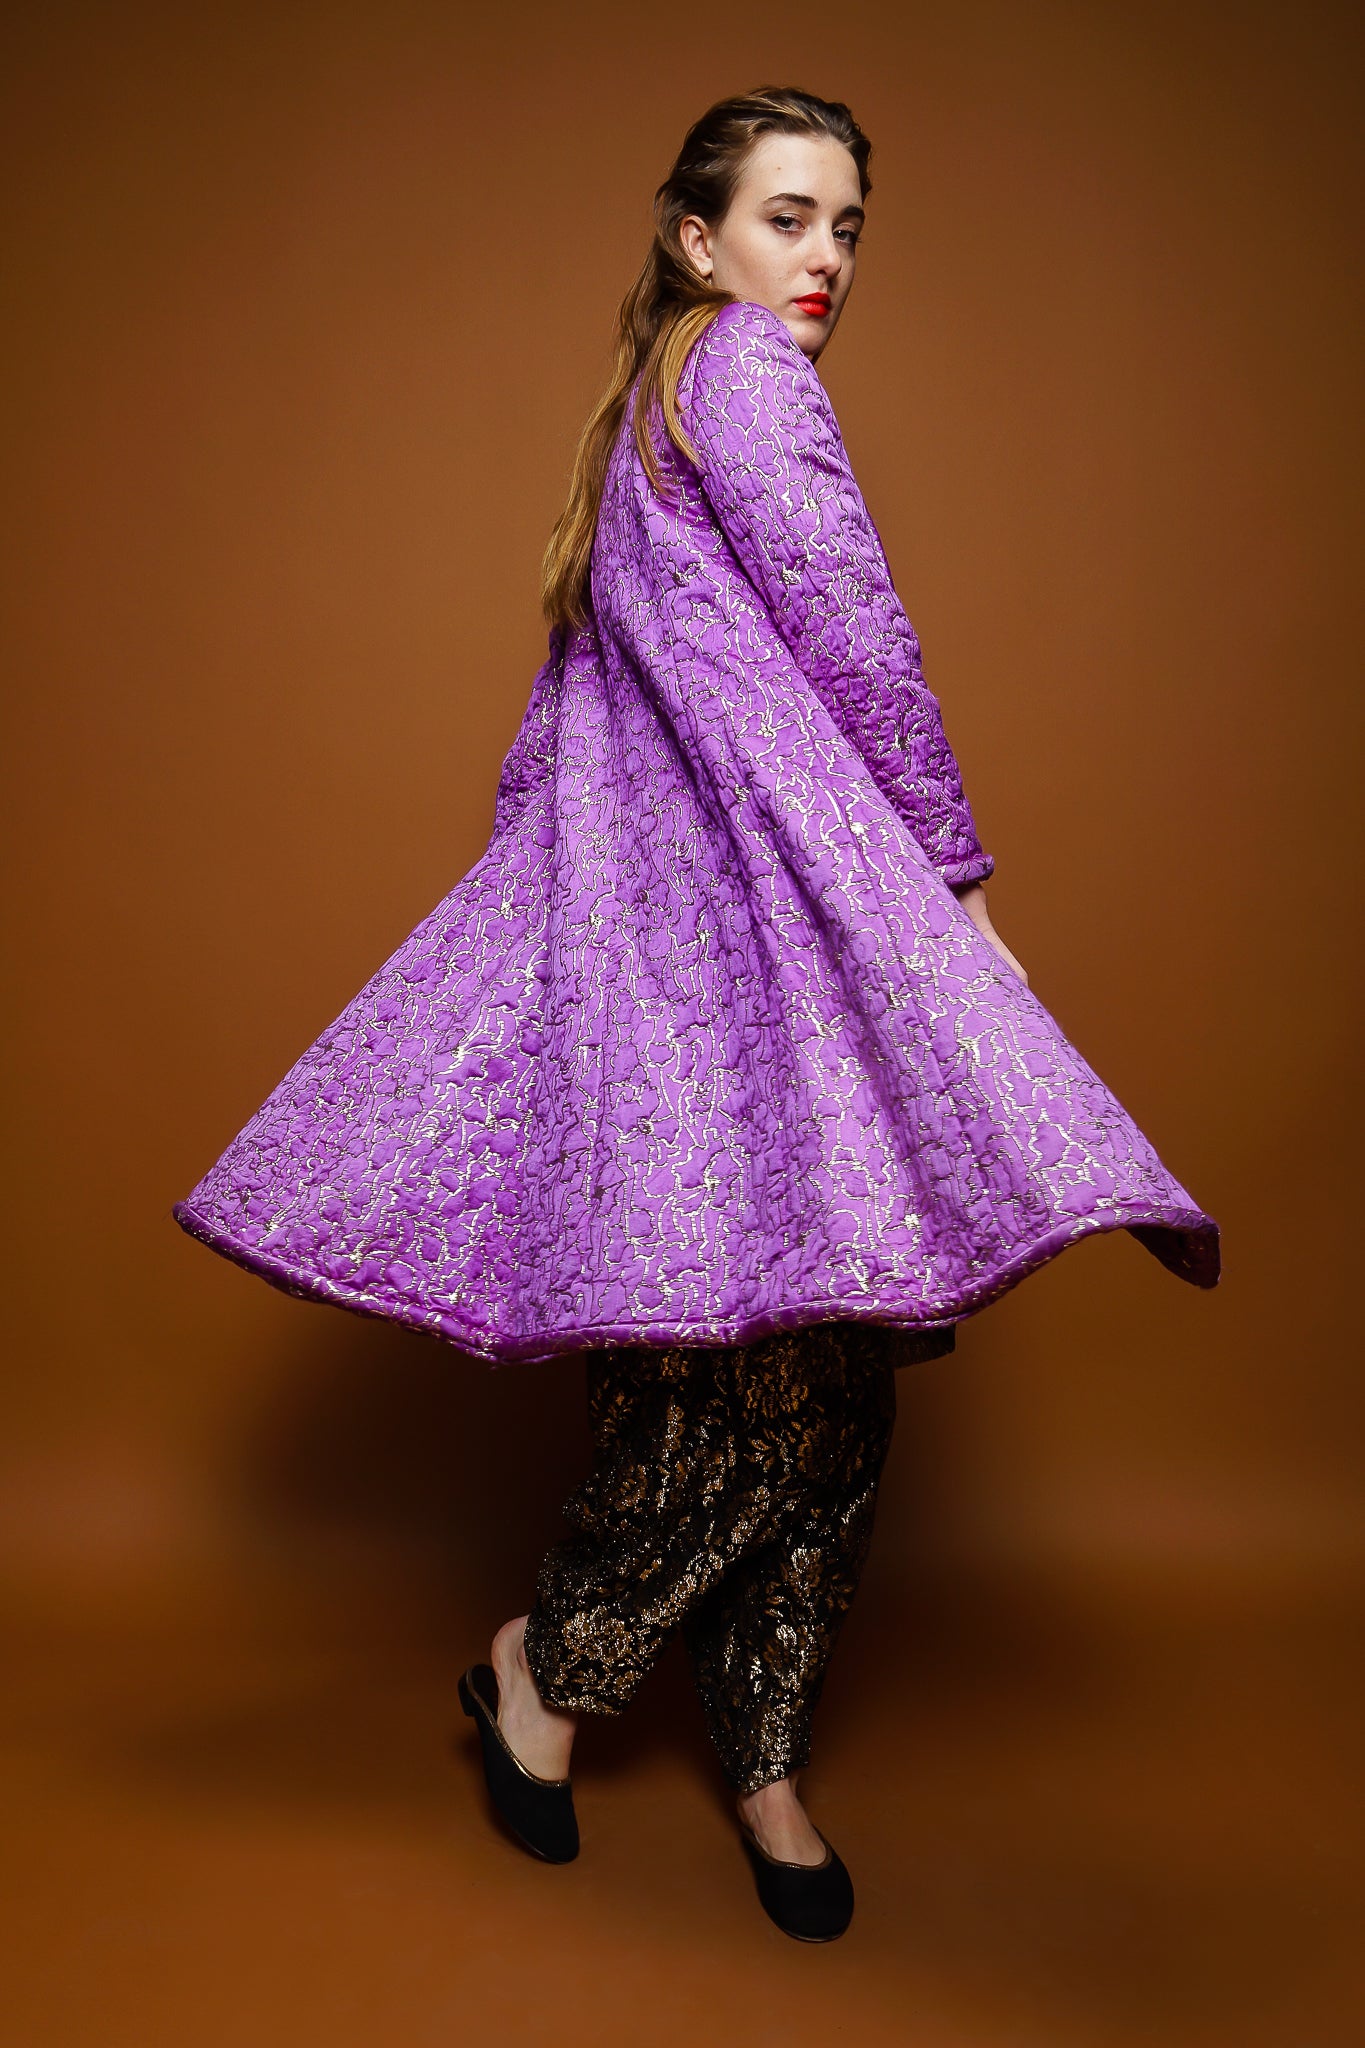 girl in Vintage Oscar de la Renta Abstract Floral Brocade Coat & lace pant set on brown @ Recess LA